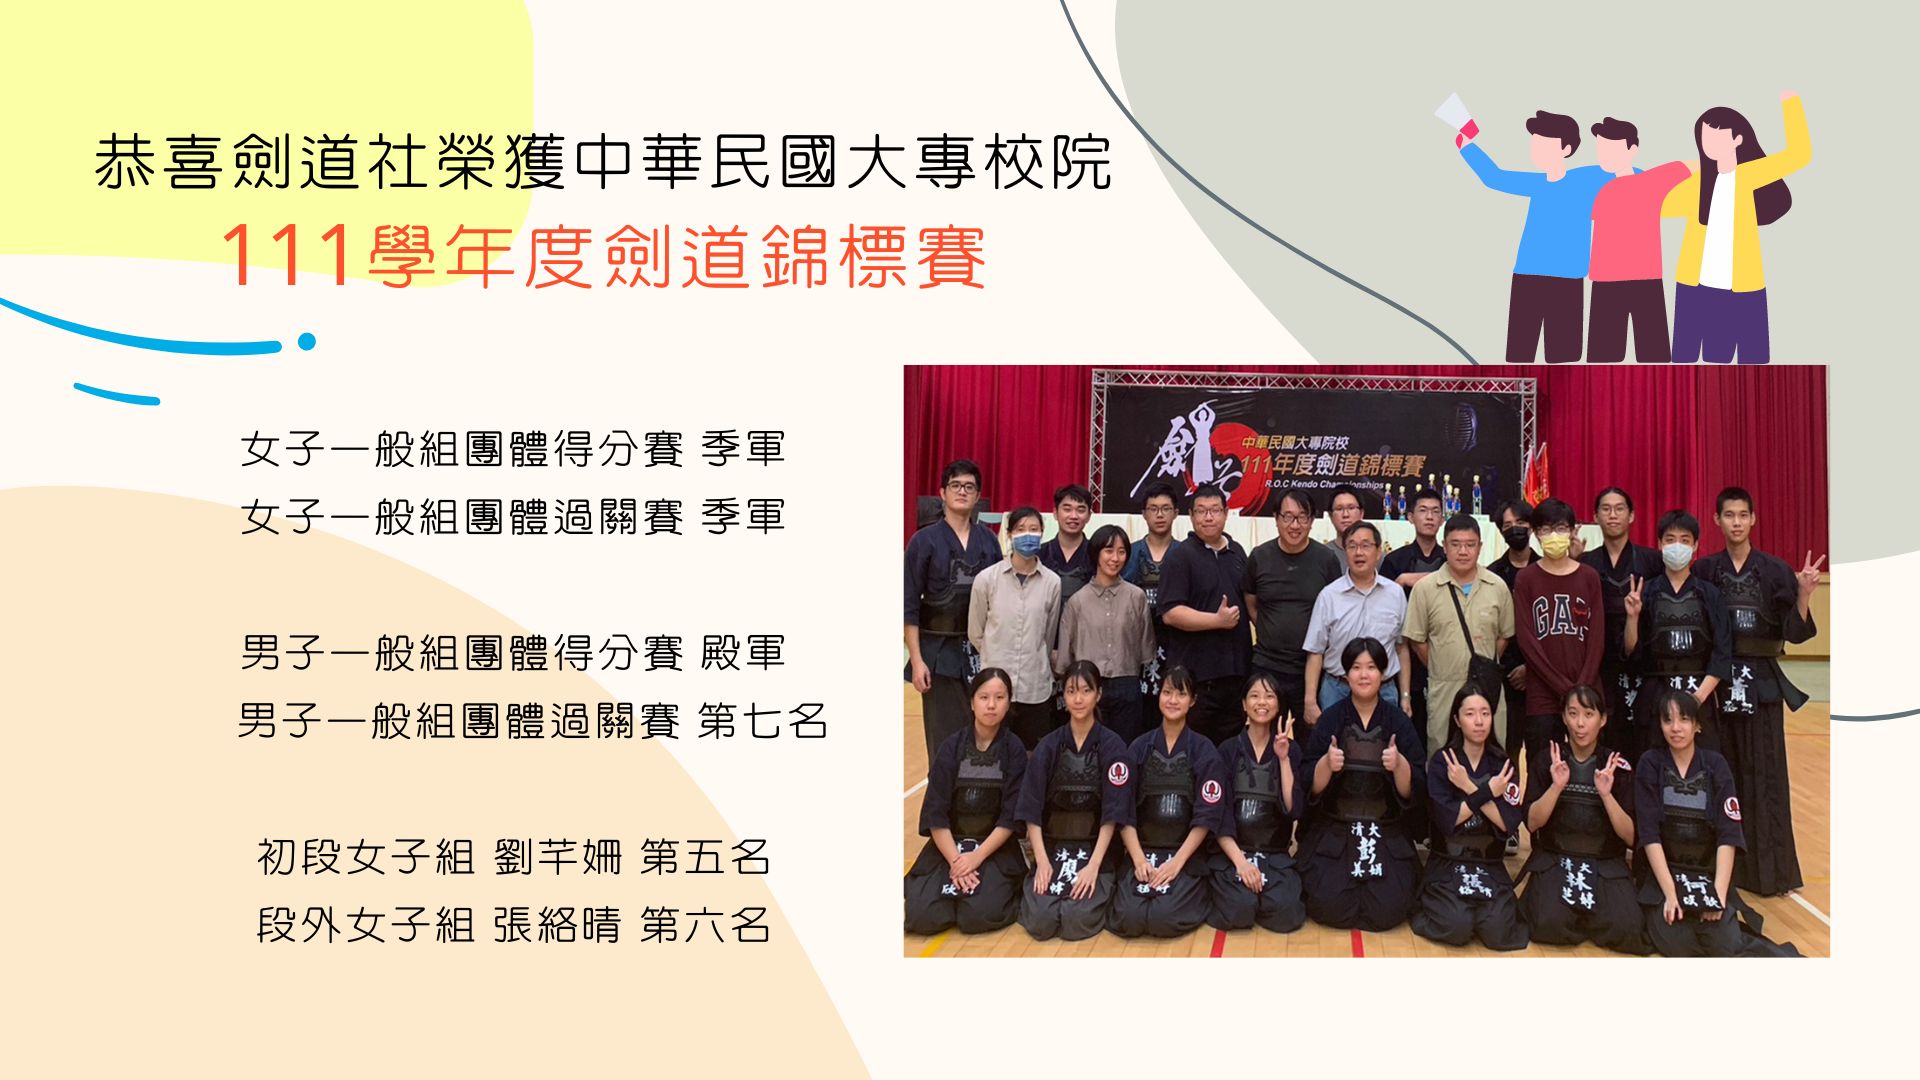 劍道社榮獲中華民國大專校院111學年度劍道錦標賽